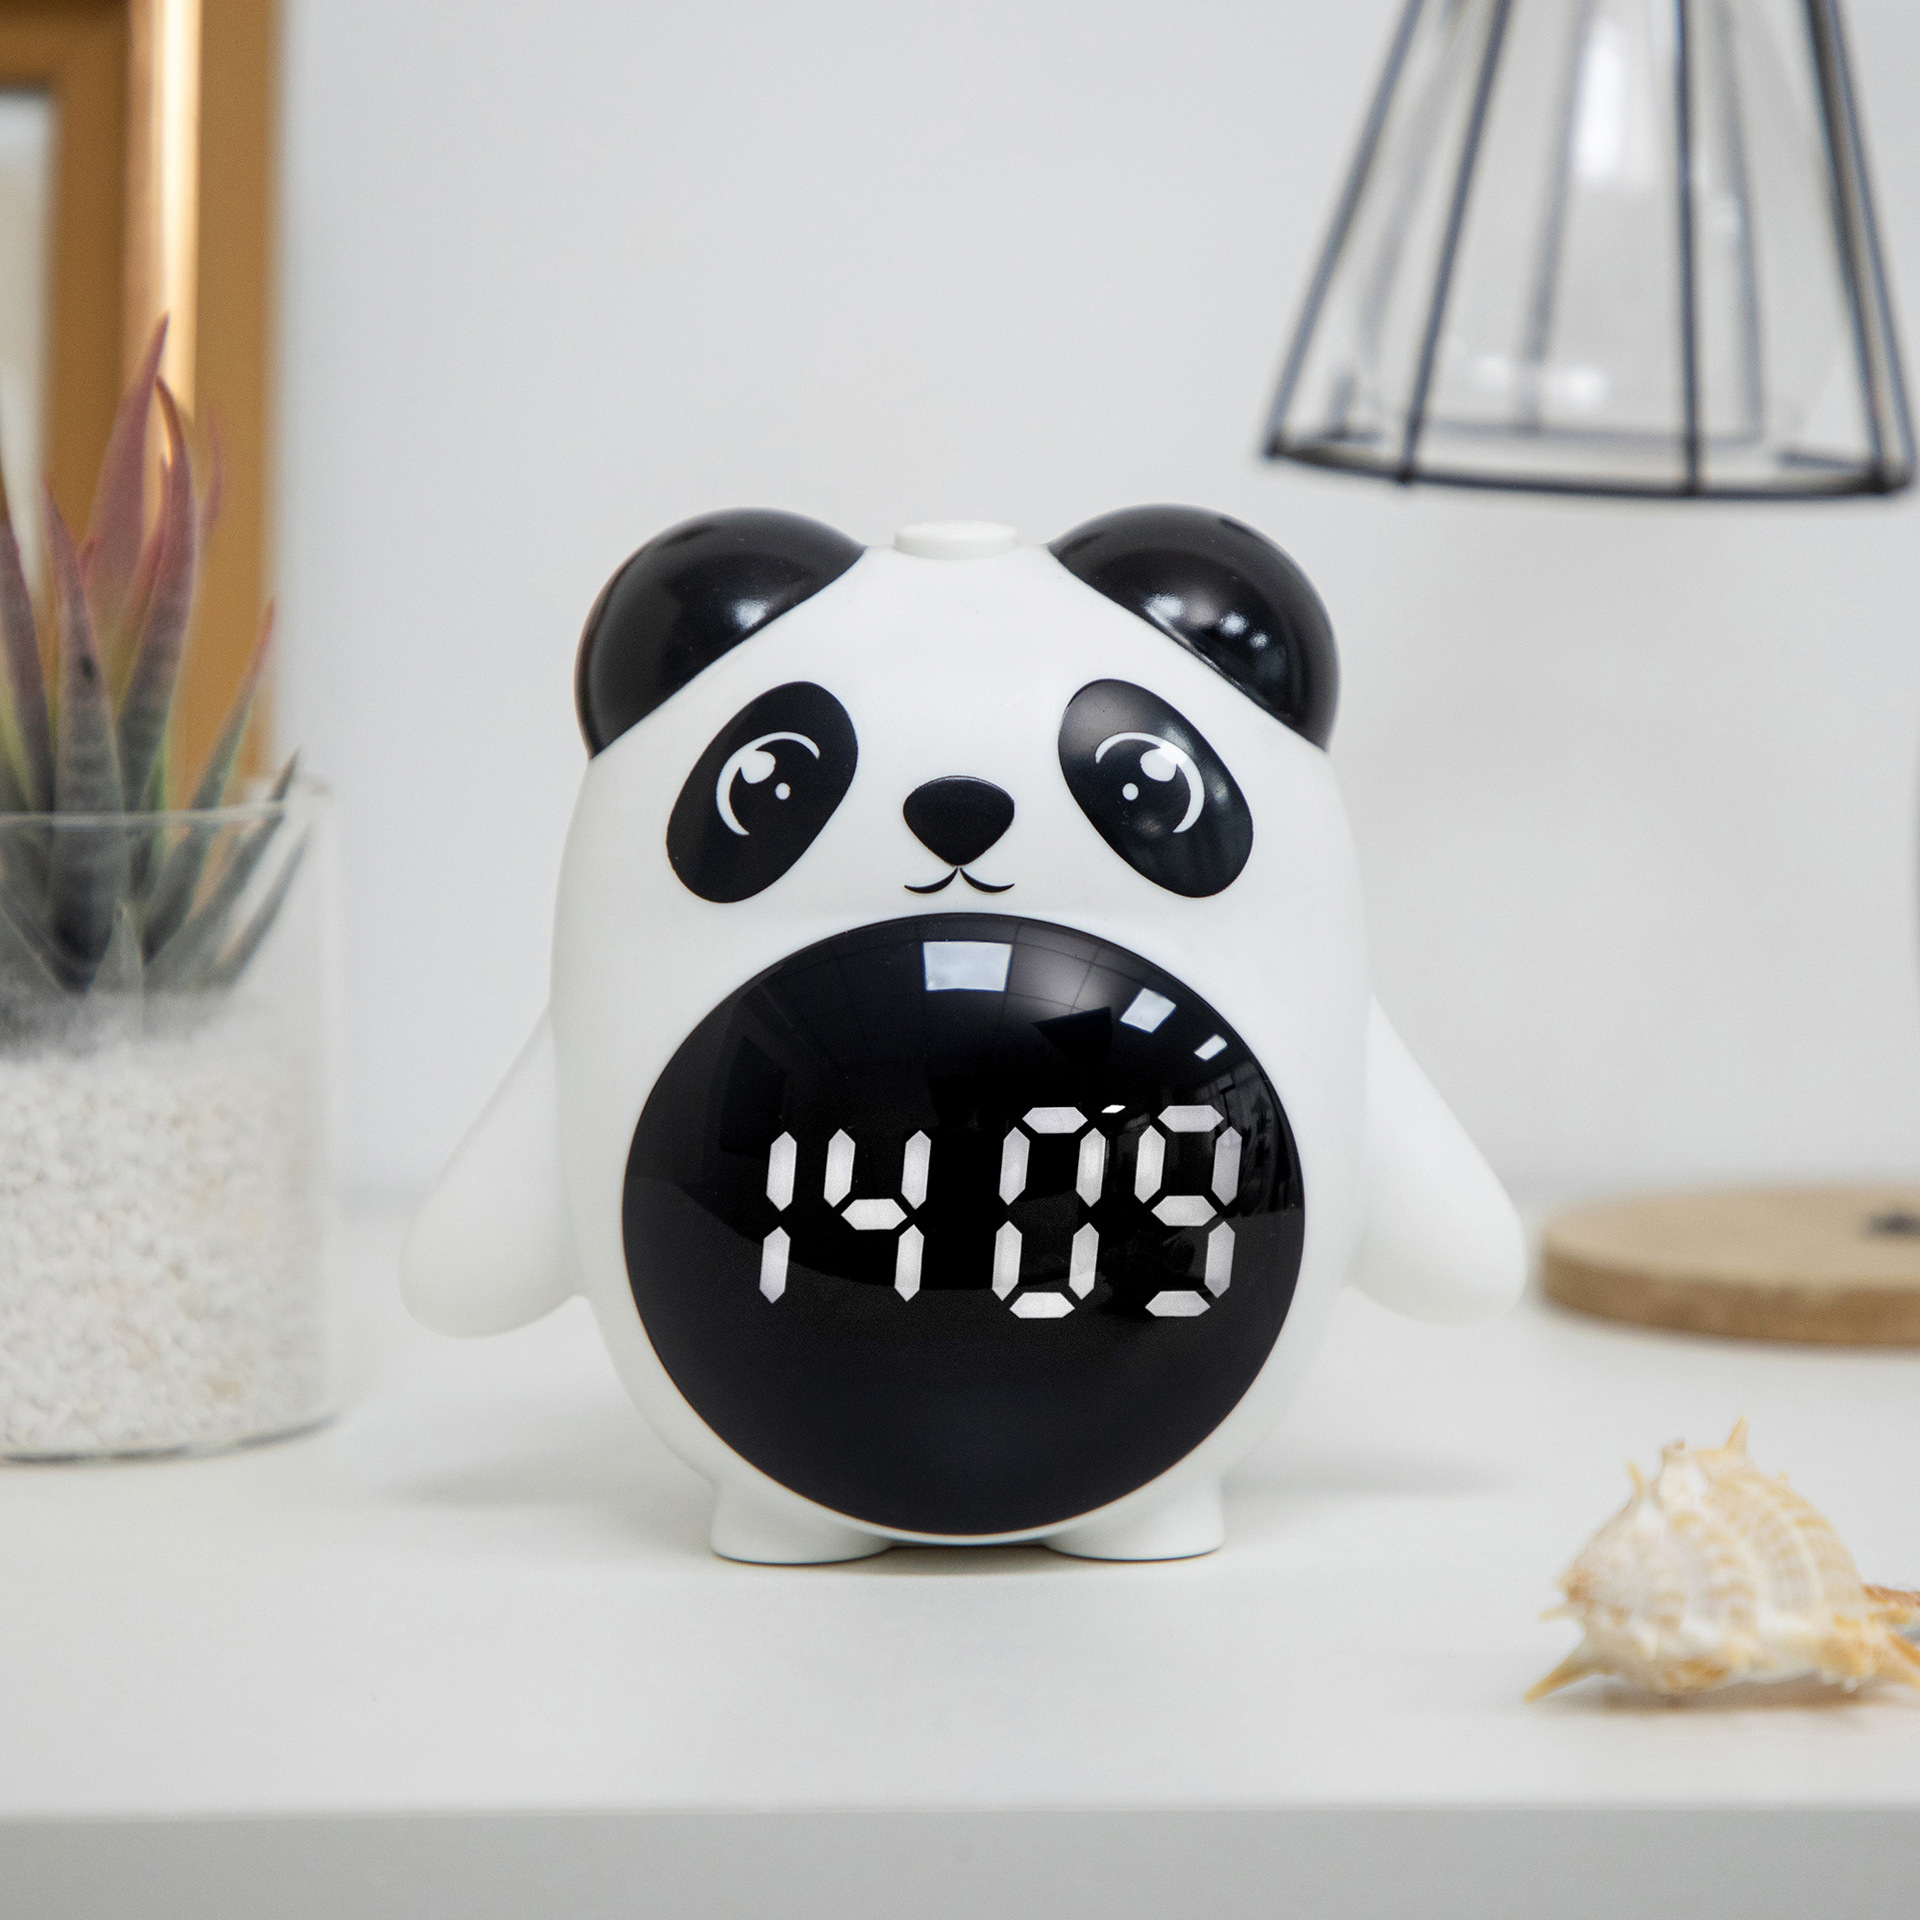 厂家直销熊猫塑料电子闹钟多功能可以当镜子电子钟简约韩版风格